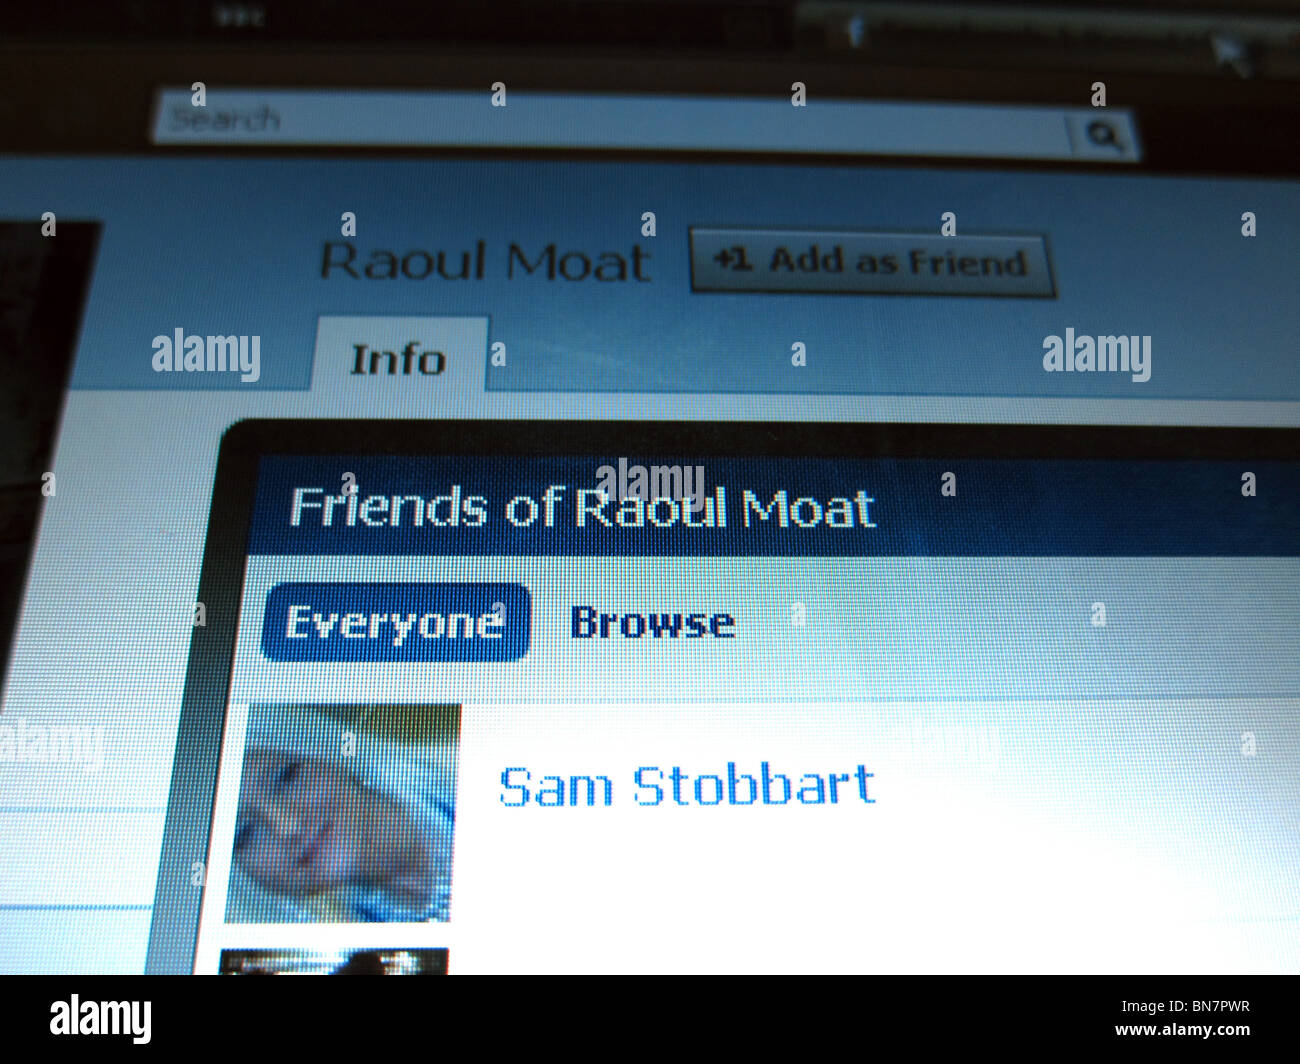 Roaul fossato della pagina di Facebook con elenco di amici tra cui Sam Stobbart. Foto Stock